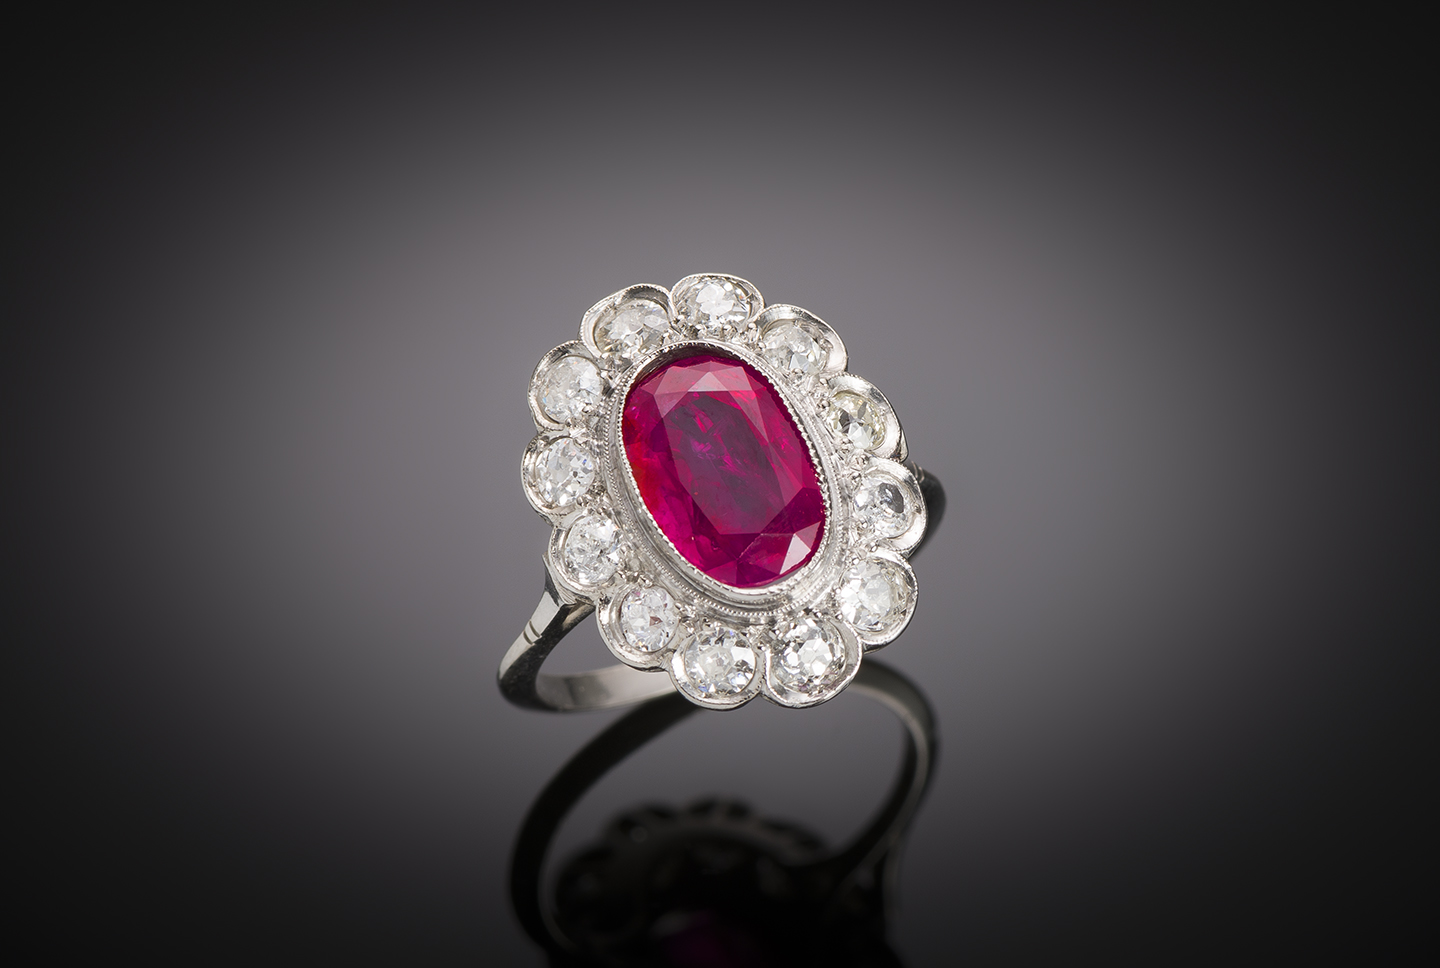 Bague rubis birman naturel non chauffé rouge vif 3,01 carats (certificat Laboratoire Français de Gemmologie) diamants (1 carat). Travail français vers 1930.-1